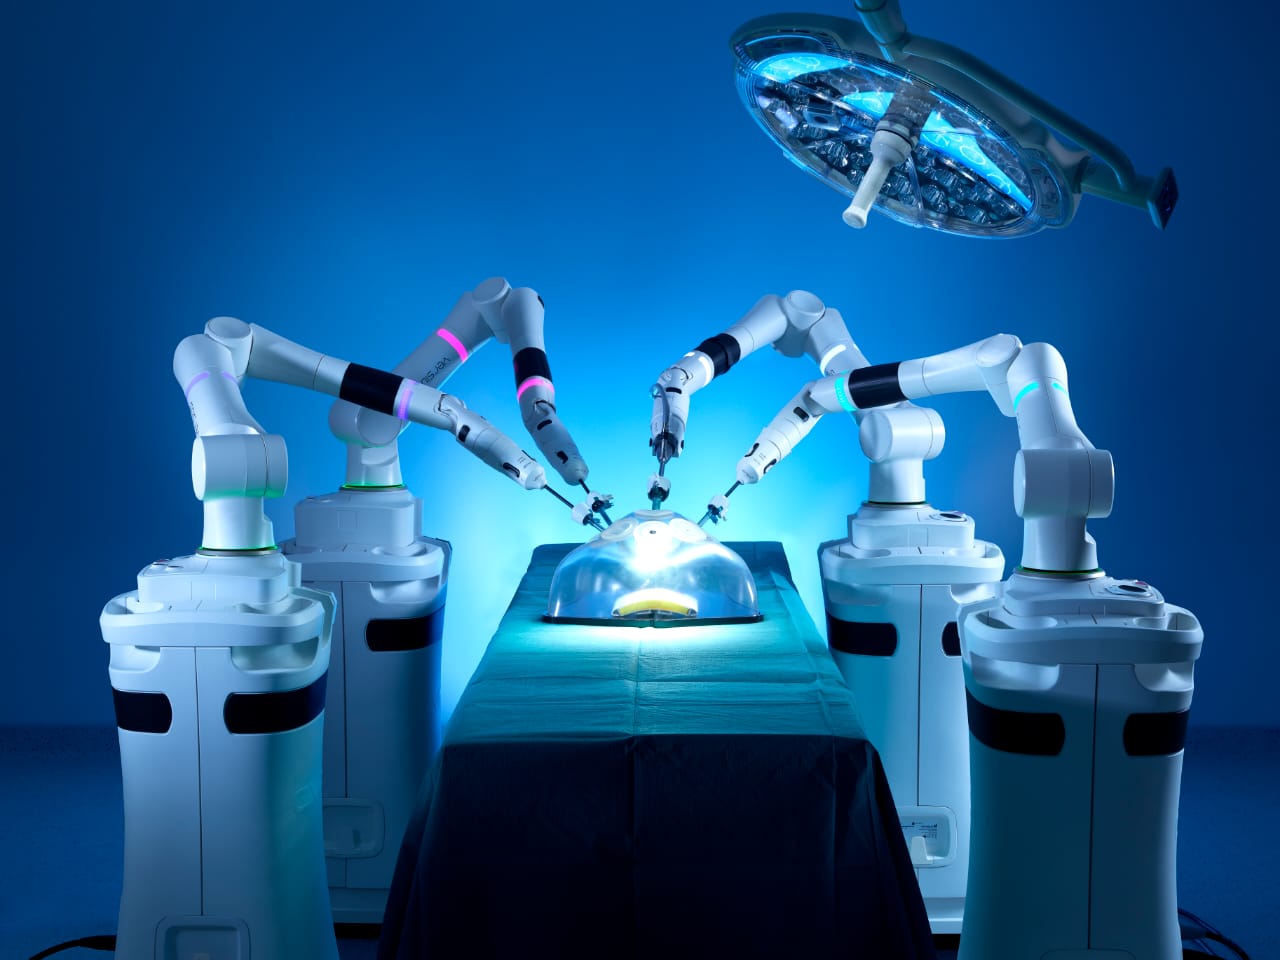 جامعة عين شمس تستعد لتطبيق الجراحة الروبوتية بمستشفياتها الجامعية (2)